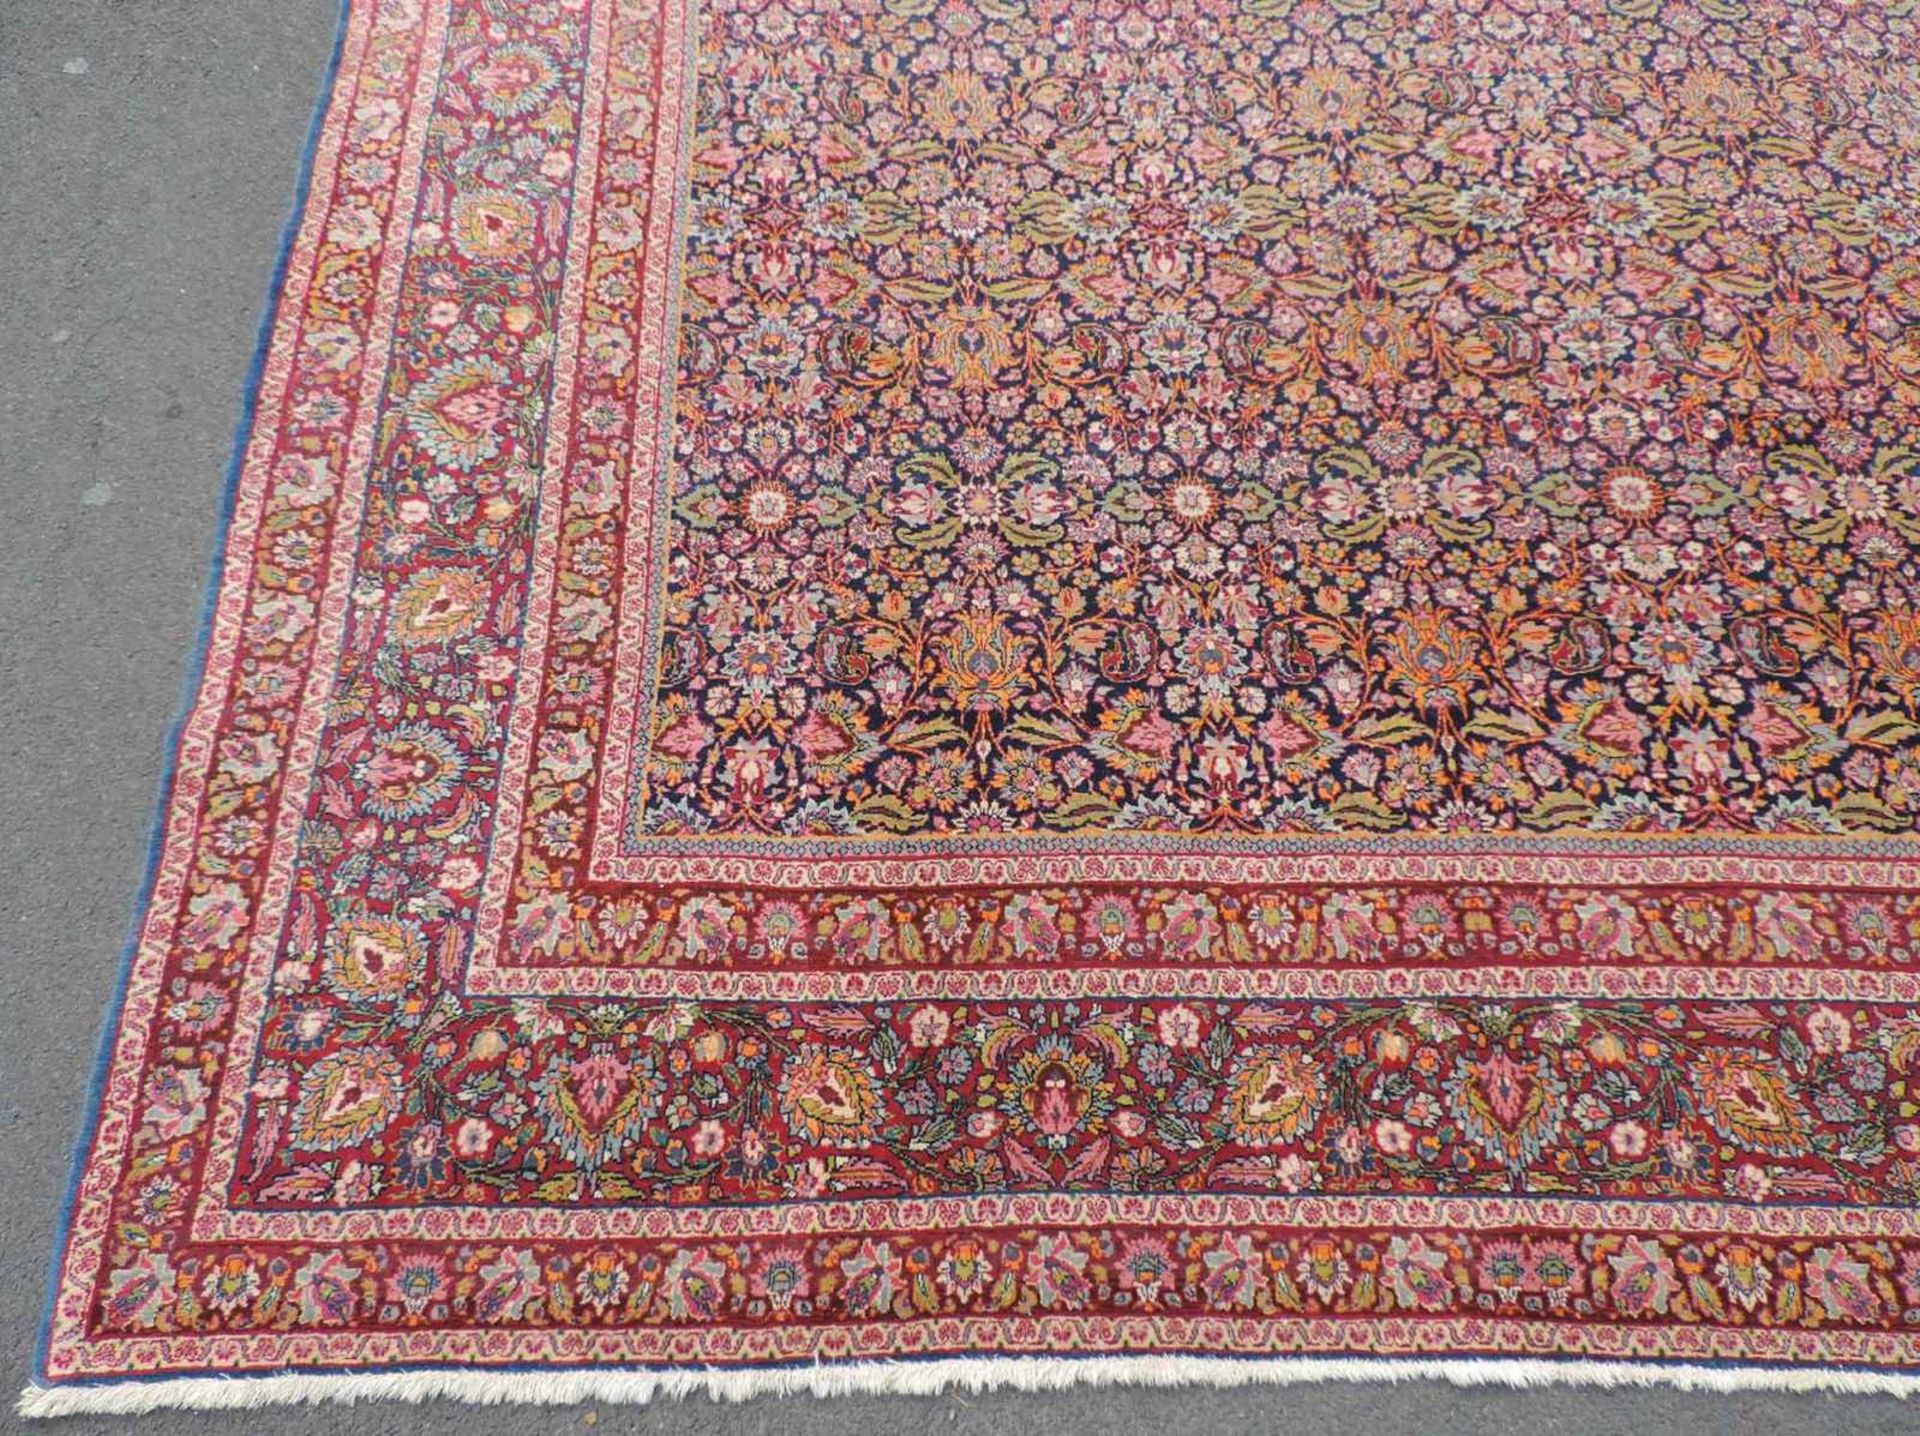 Kirman Laver Meisterteppich. Sehr feine Knüpfung. Iran. Antik, um 1900. 345 cm x 255 cm. - Bild 2 aus 9